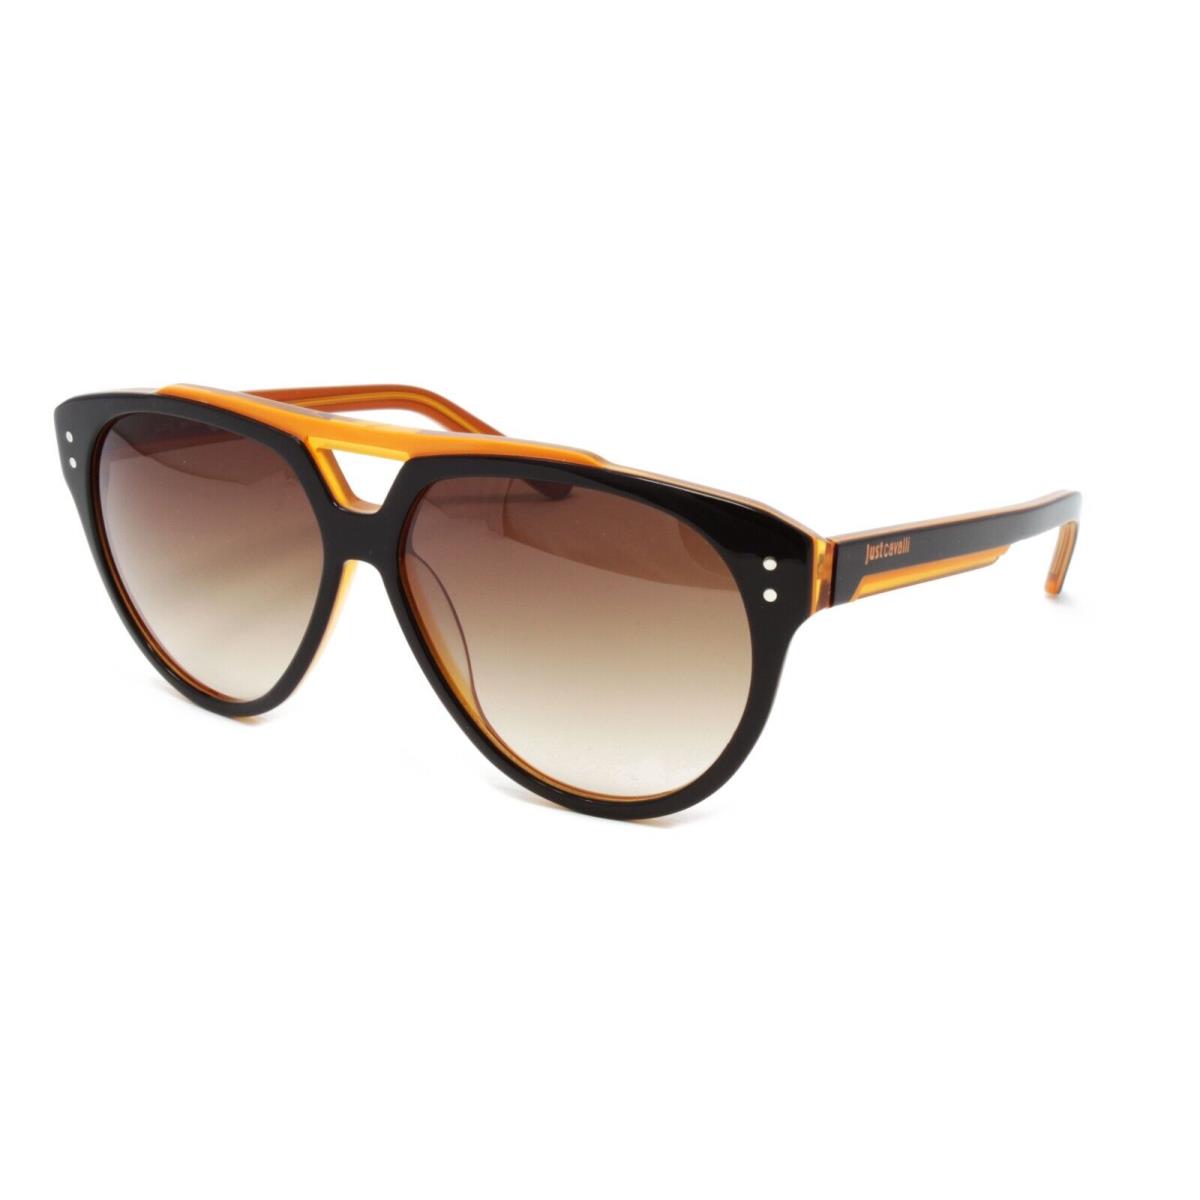 Just Cavalli Sunglasses Unisex Pilot JC506S 05F Black/orange 58mm